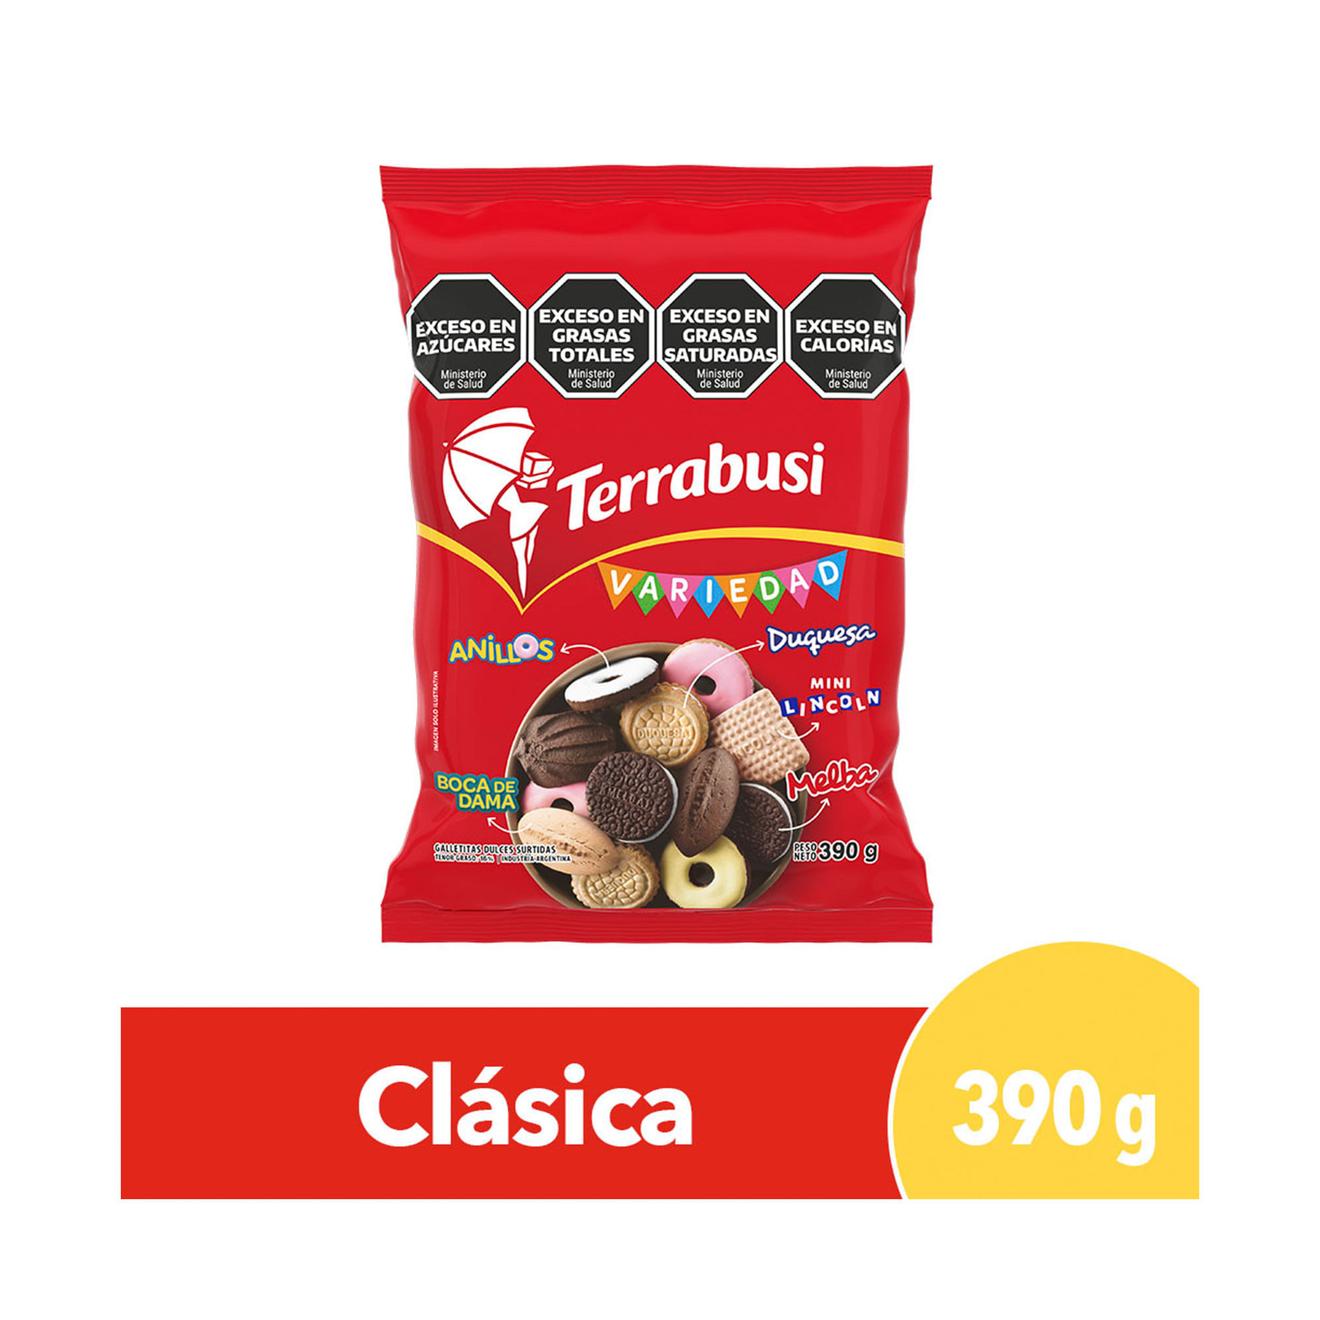 Oferta de Galletitas dulces Variedad de Terrabusi nuevo mix 390 g. por $1735 en Carrefour